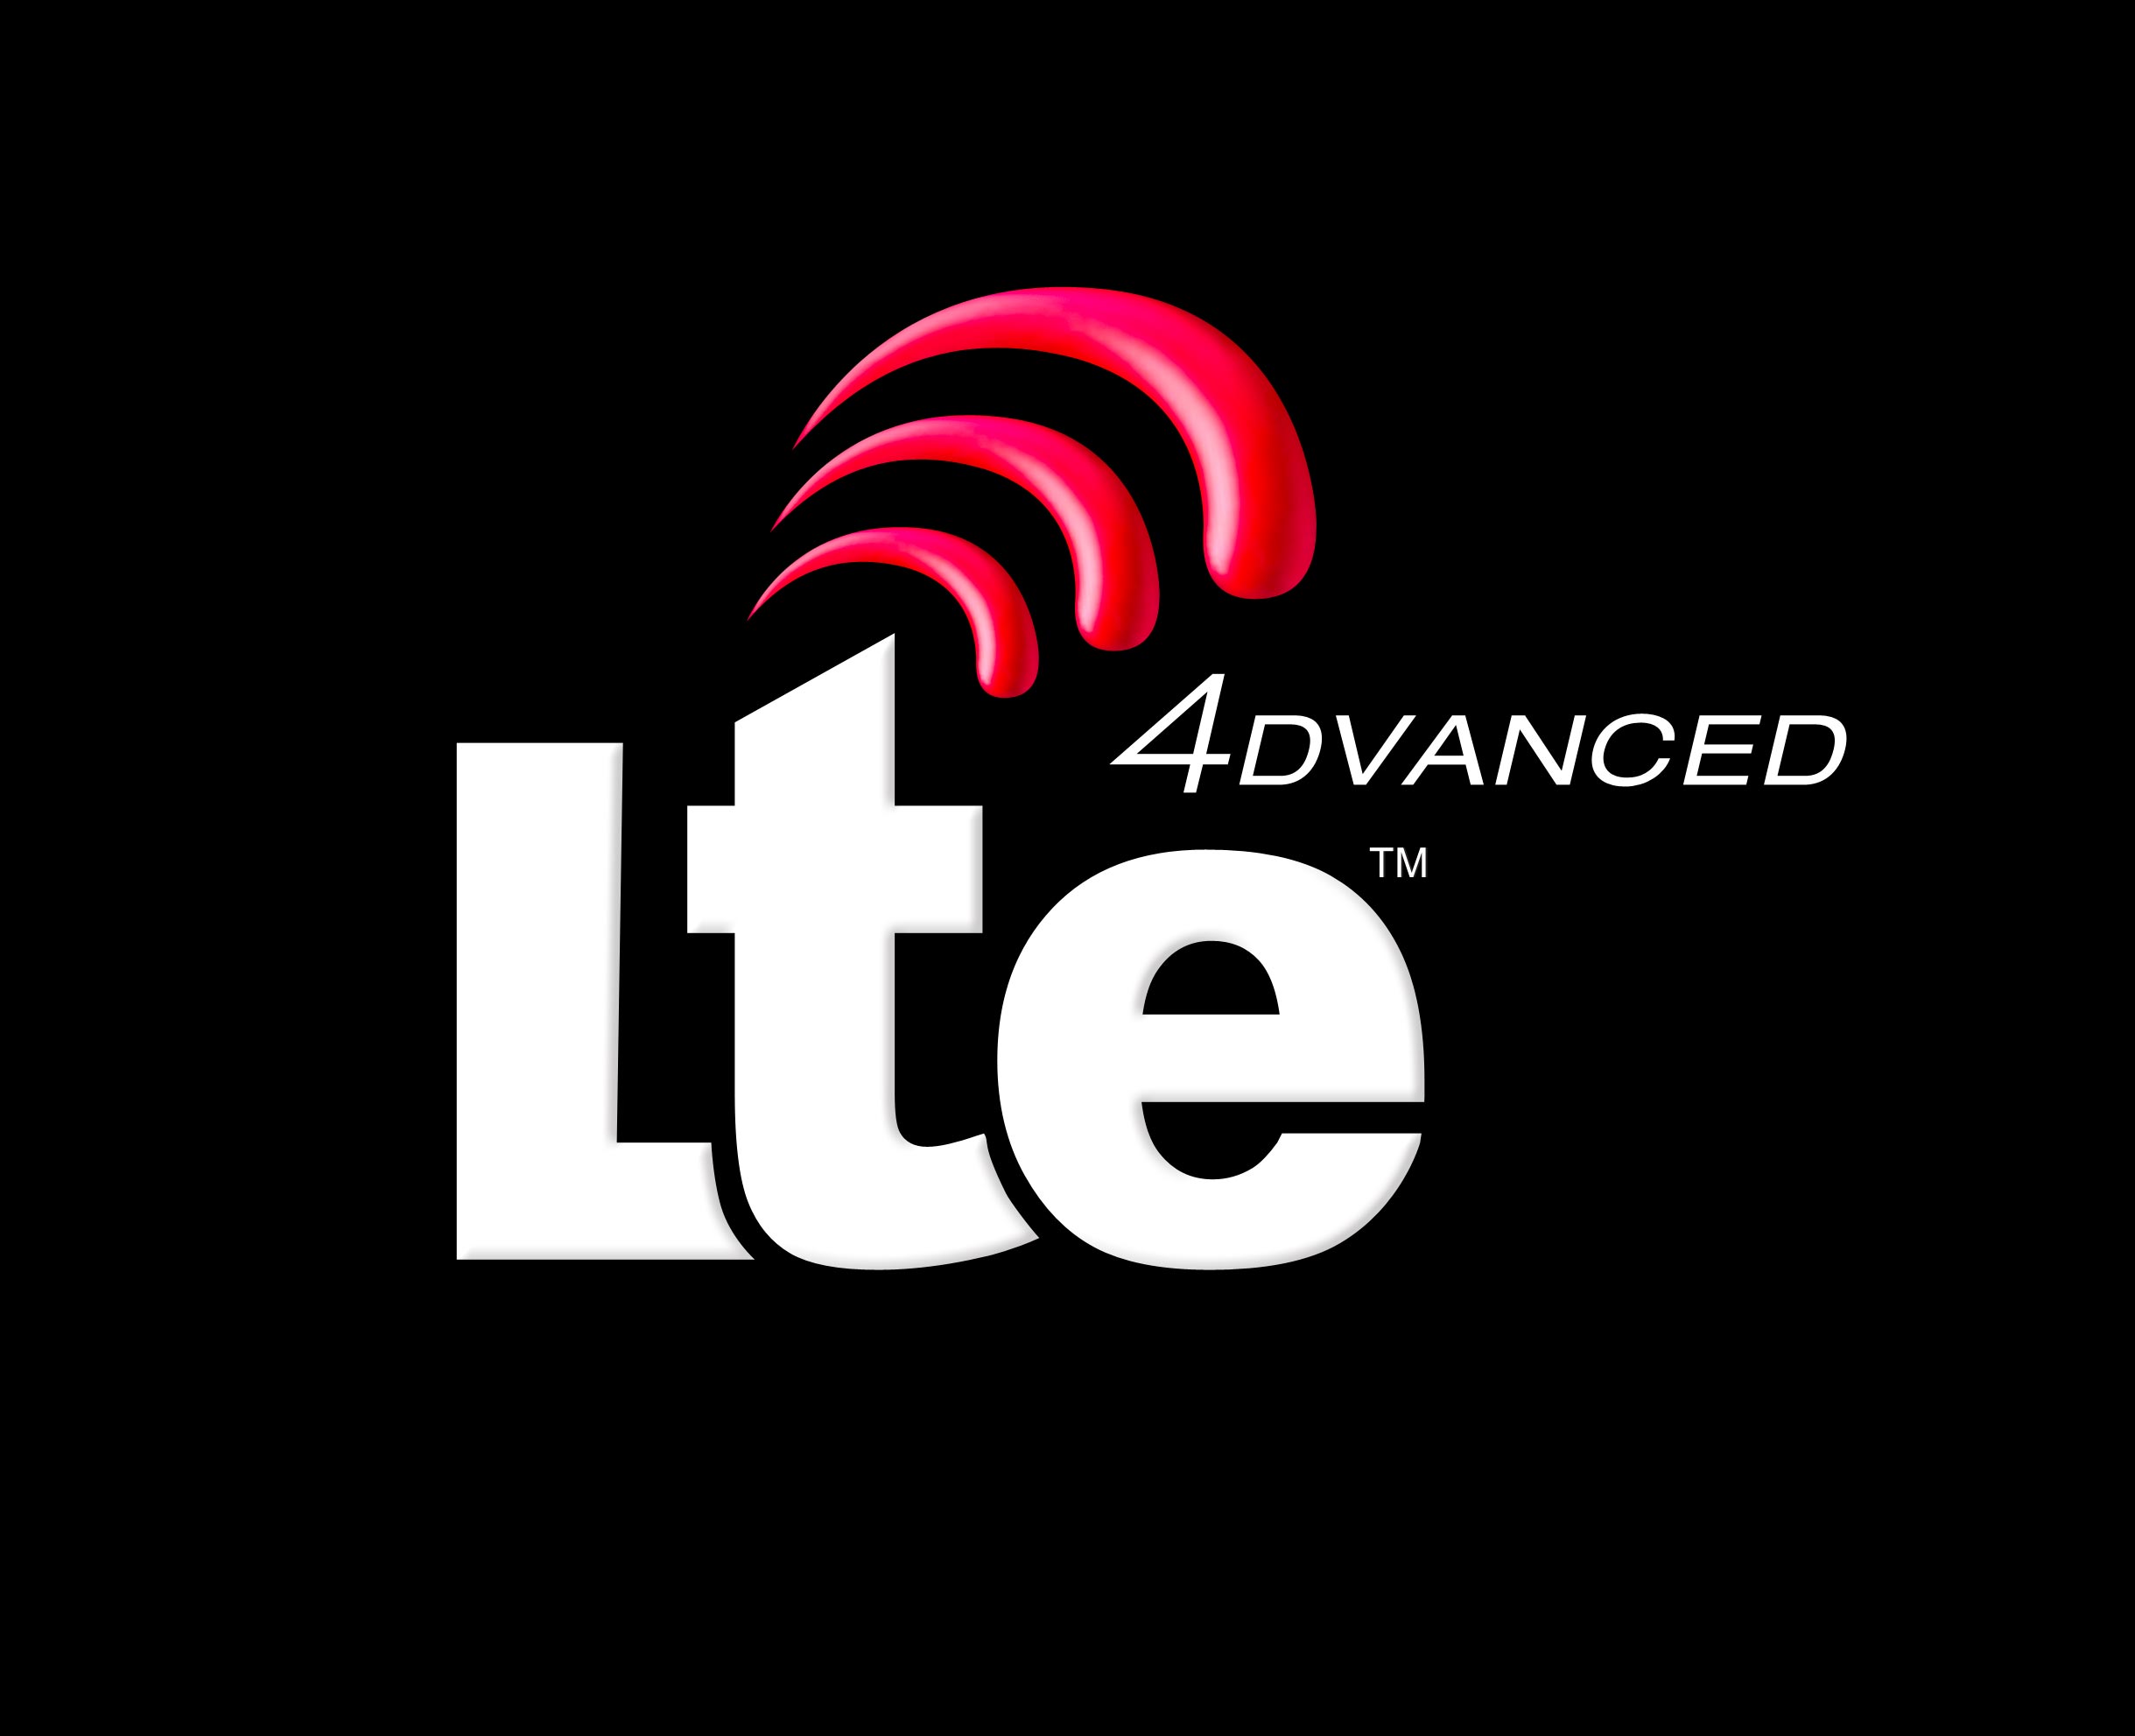 LTE Advanced in arrivo la connessione ad internet super veloce, addio fibra ottica